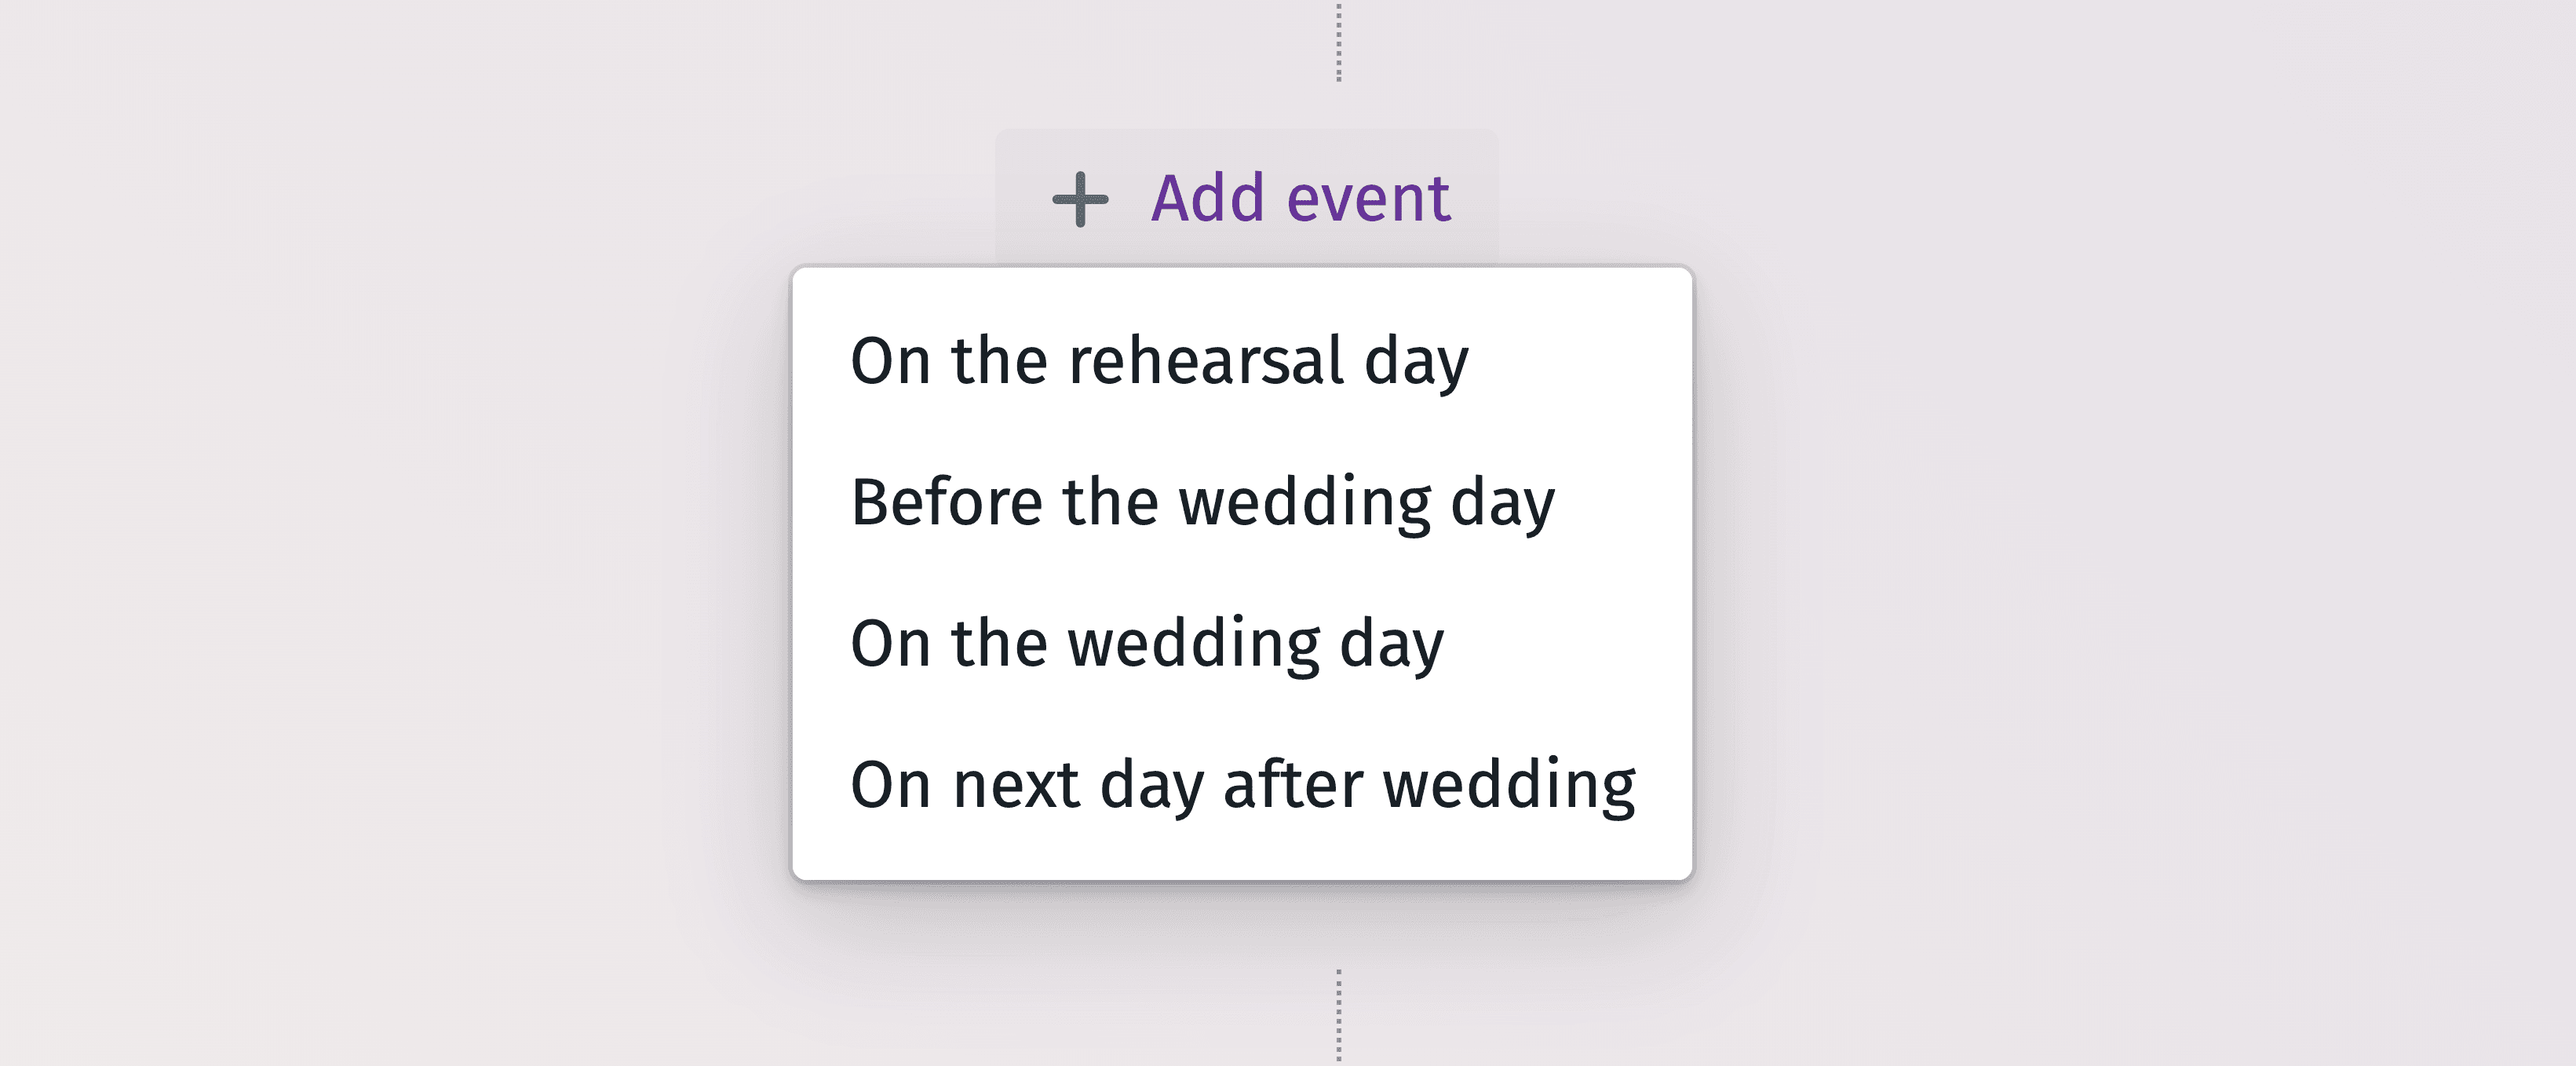 Подробный график для эффективного планирования каждого момента свадебного дня